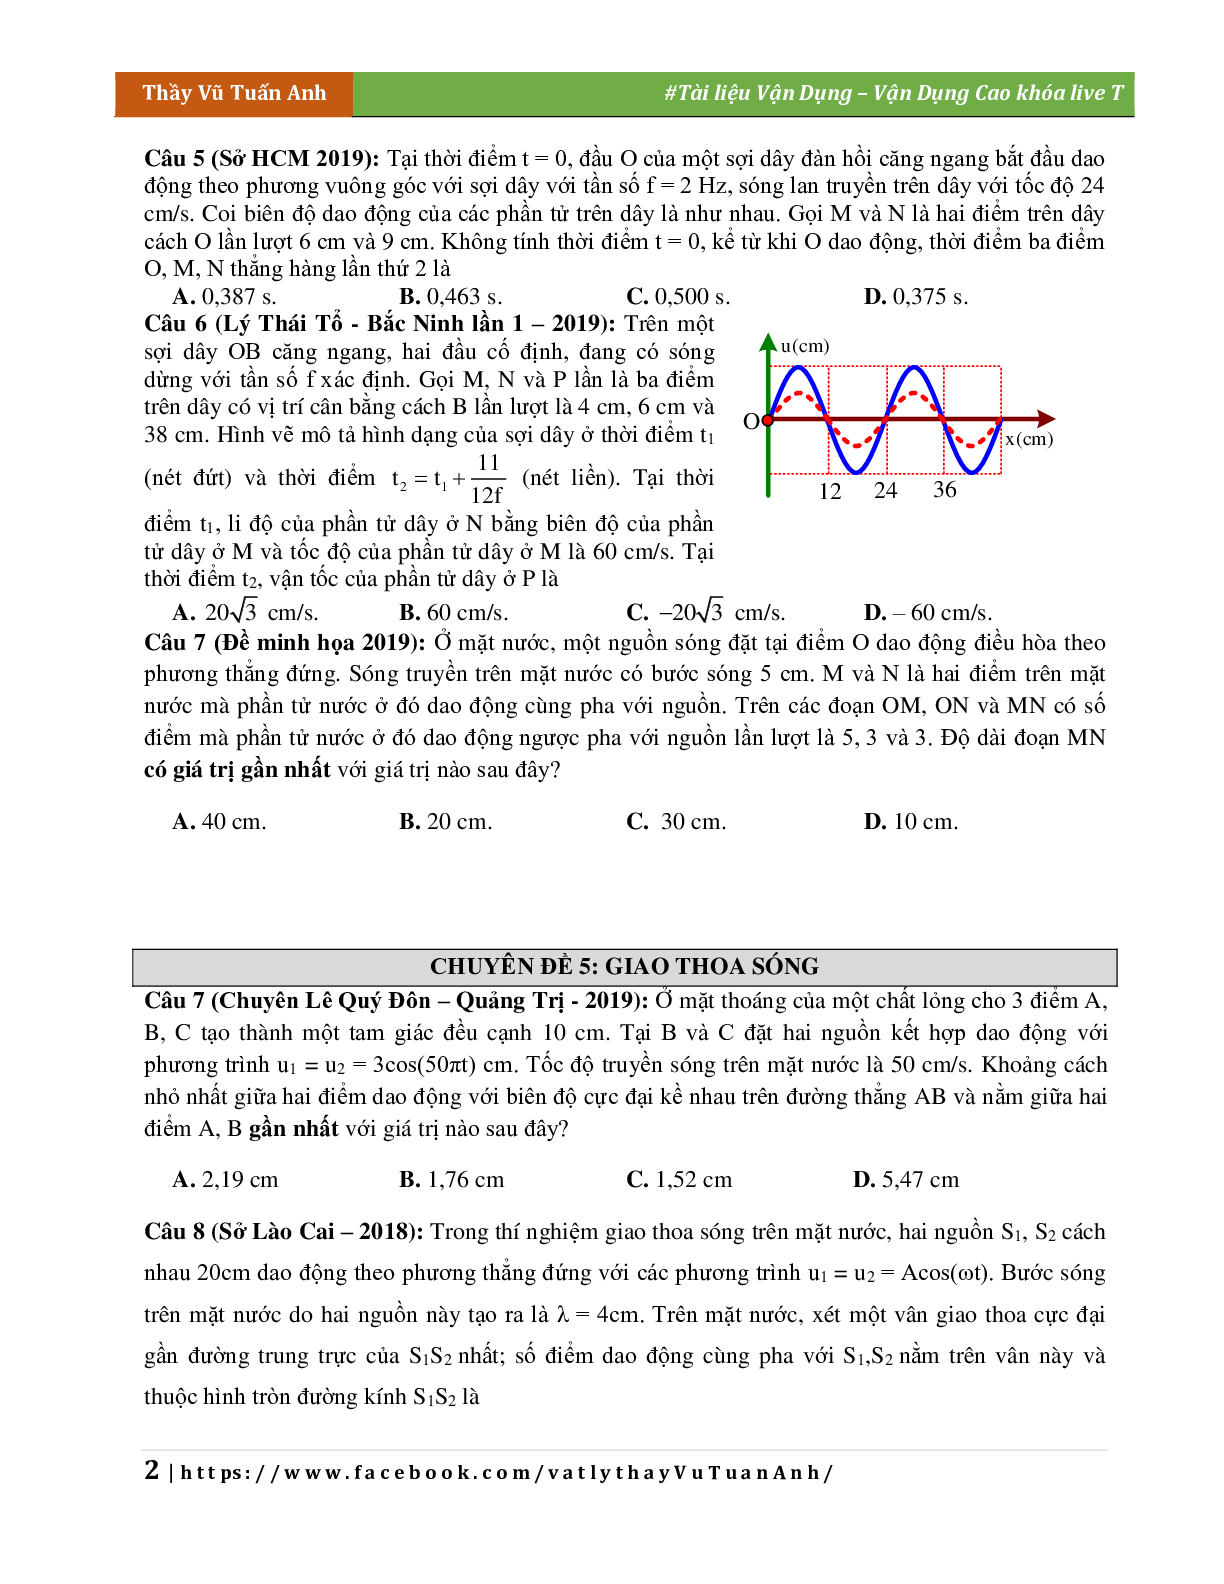 Đề Vận Dụng Cao Chương Sóng Cơ Môn Vật Lý Lớp 12 (trang 2)